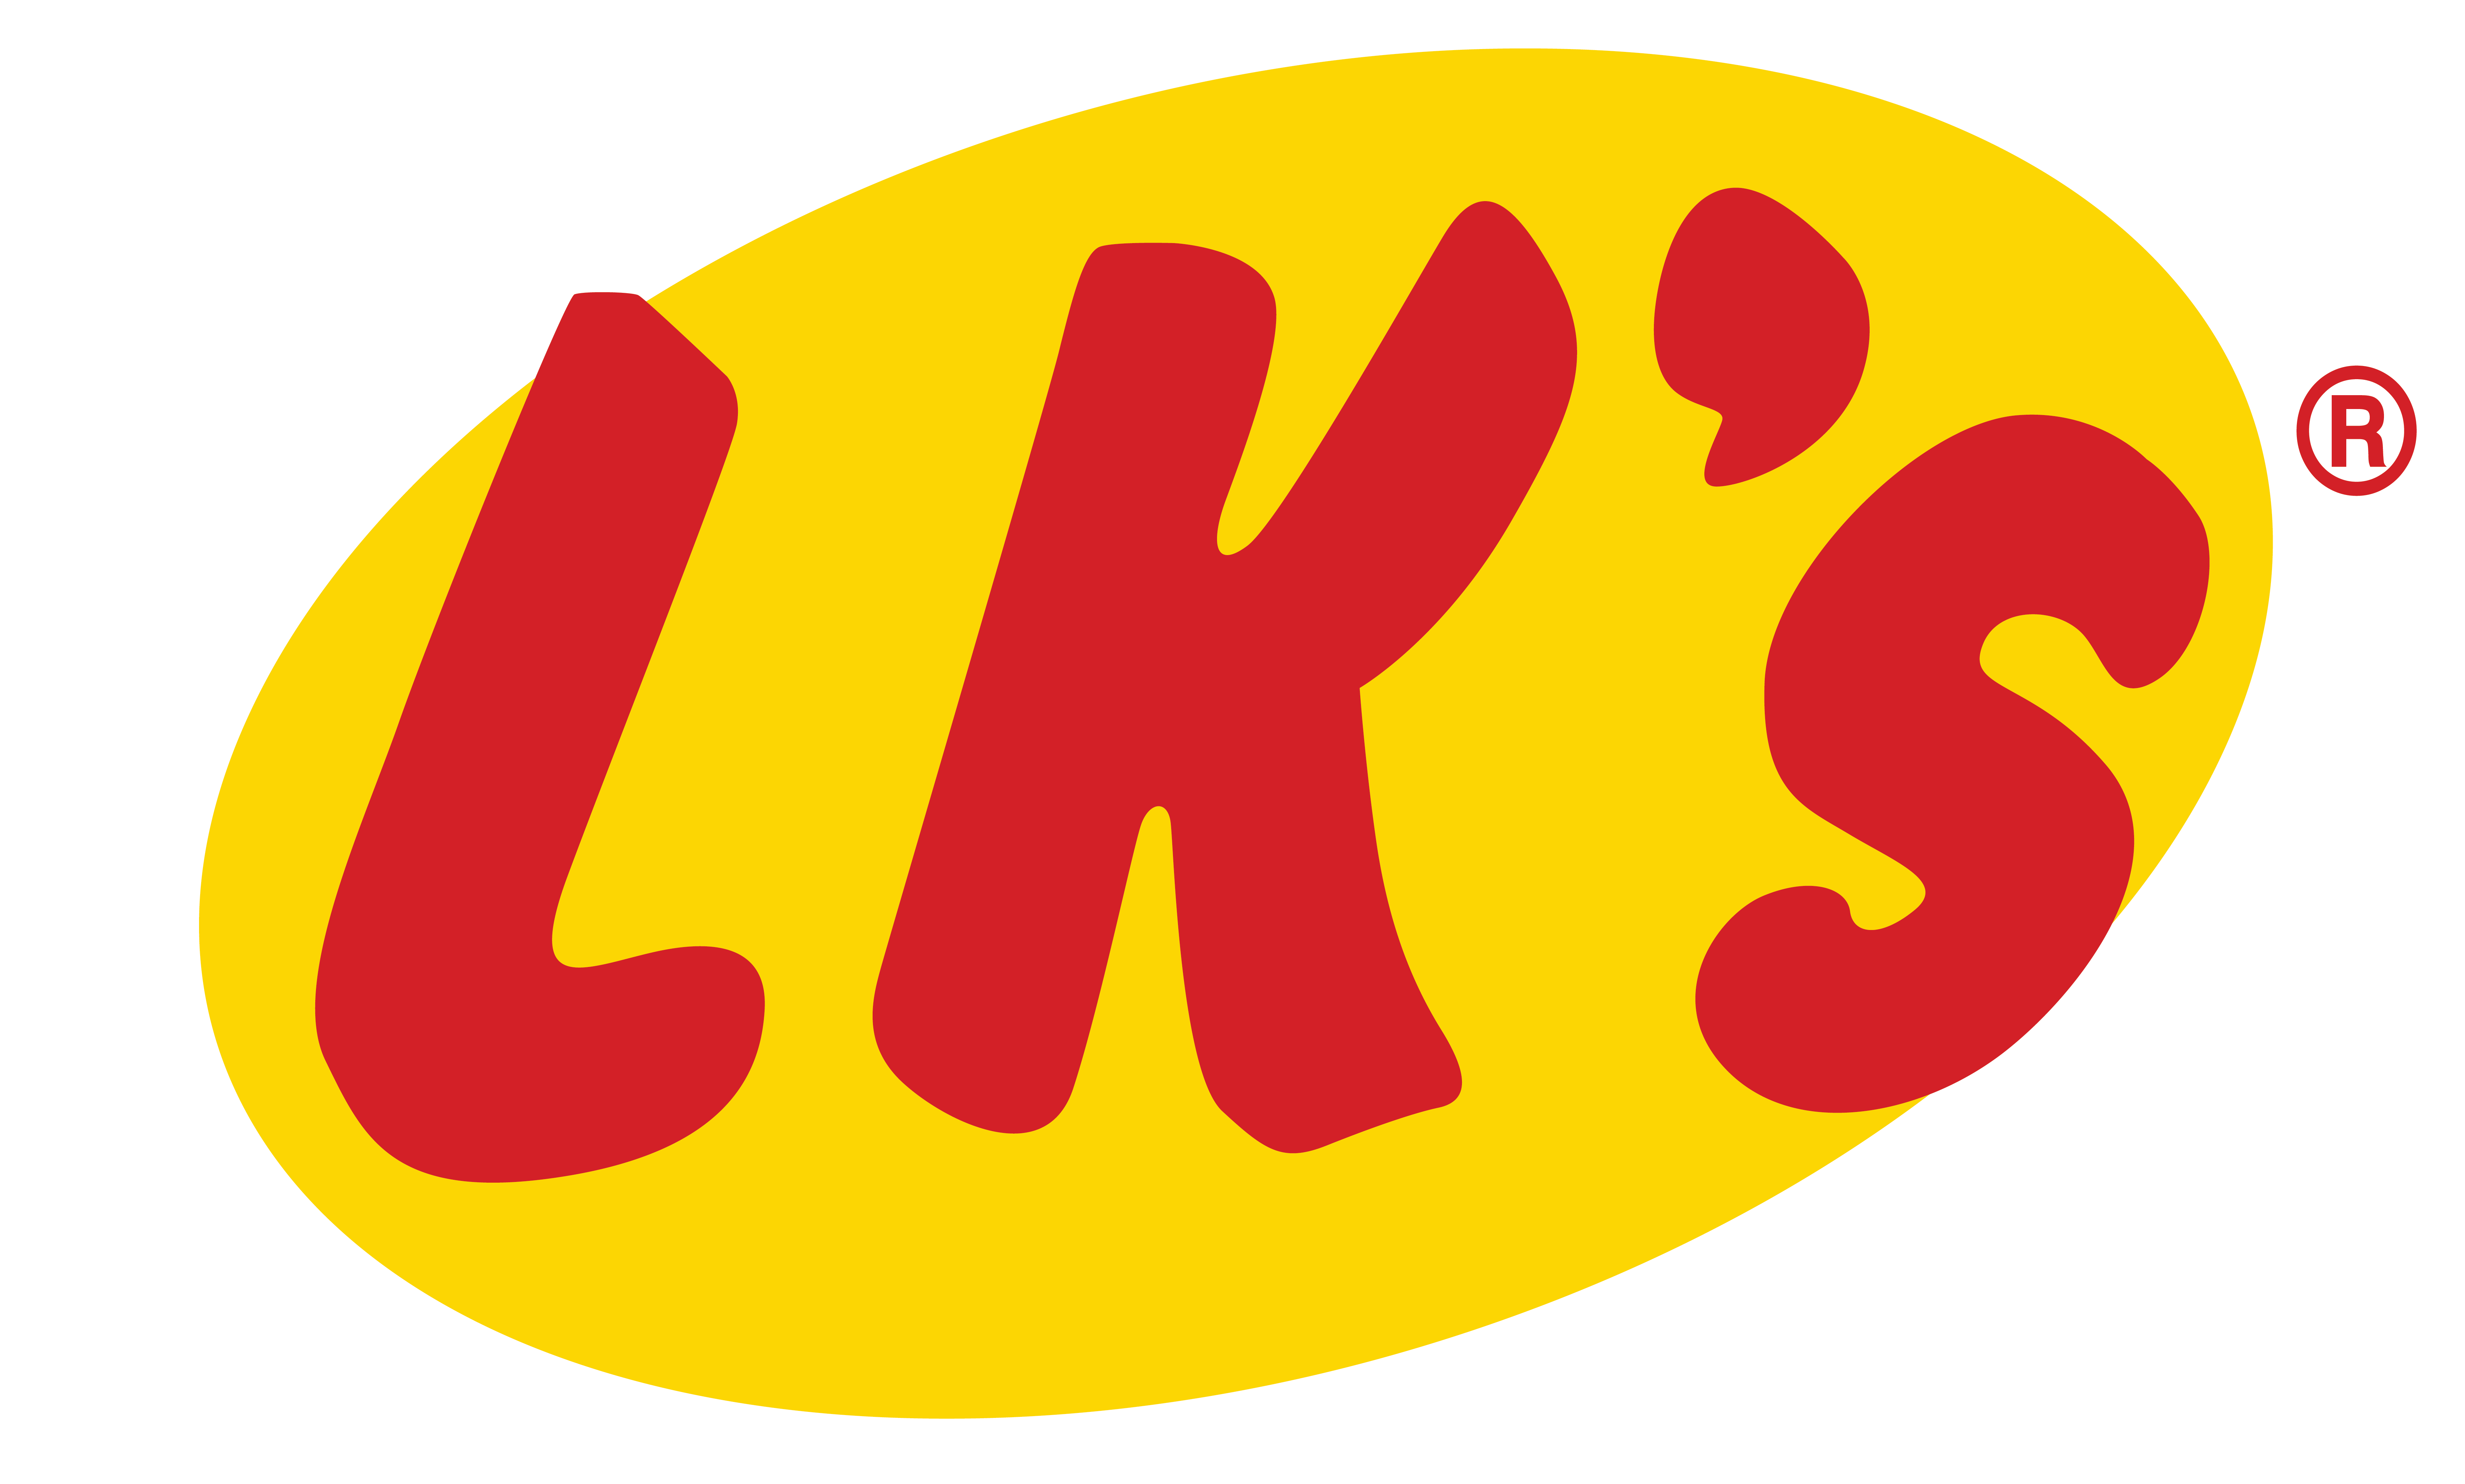 Contact Info - Lk's Logo (6934x5138)